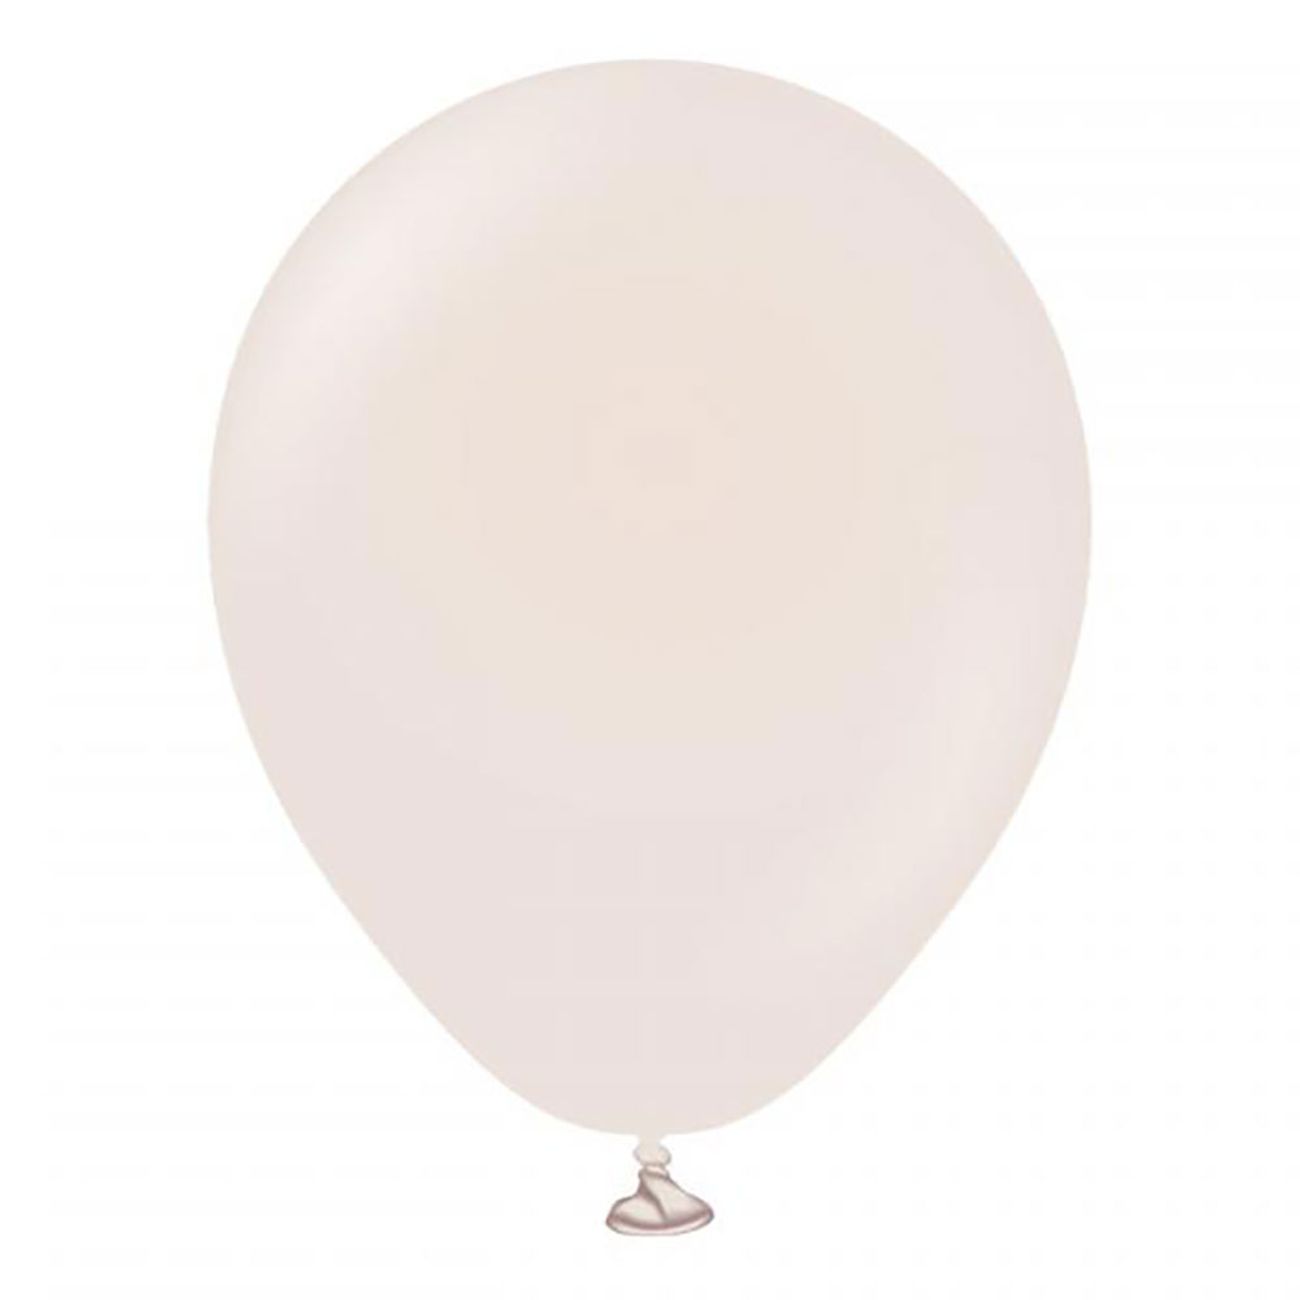 latexballonger-white-sand-13-cm-100-pack-82361-1